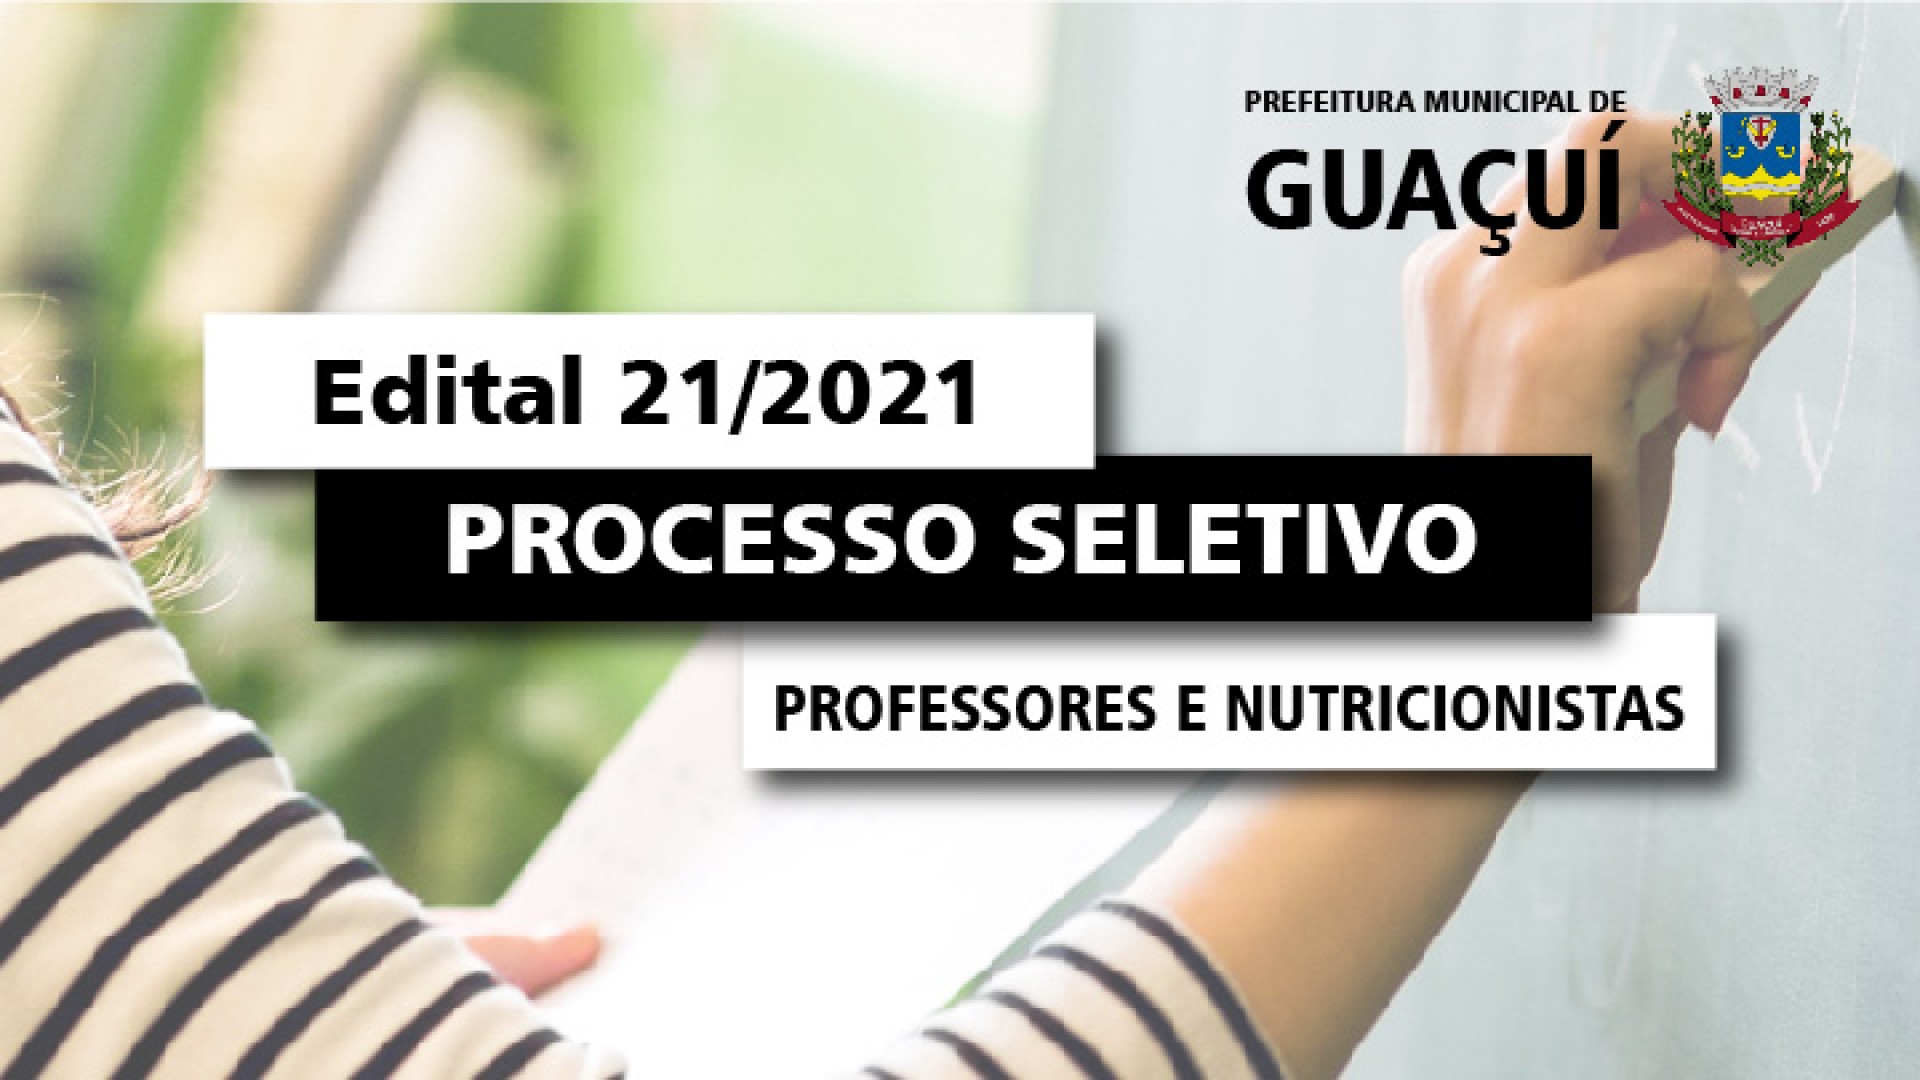 EDITAL EDUCAÇÃO Nº 021/2021 - Professores e Nutricionistas